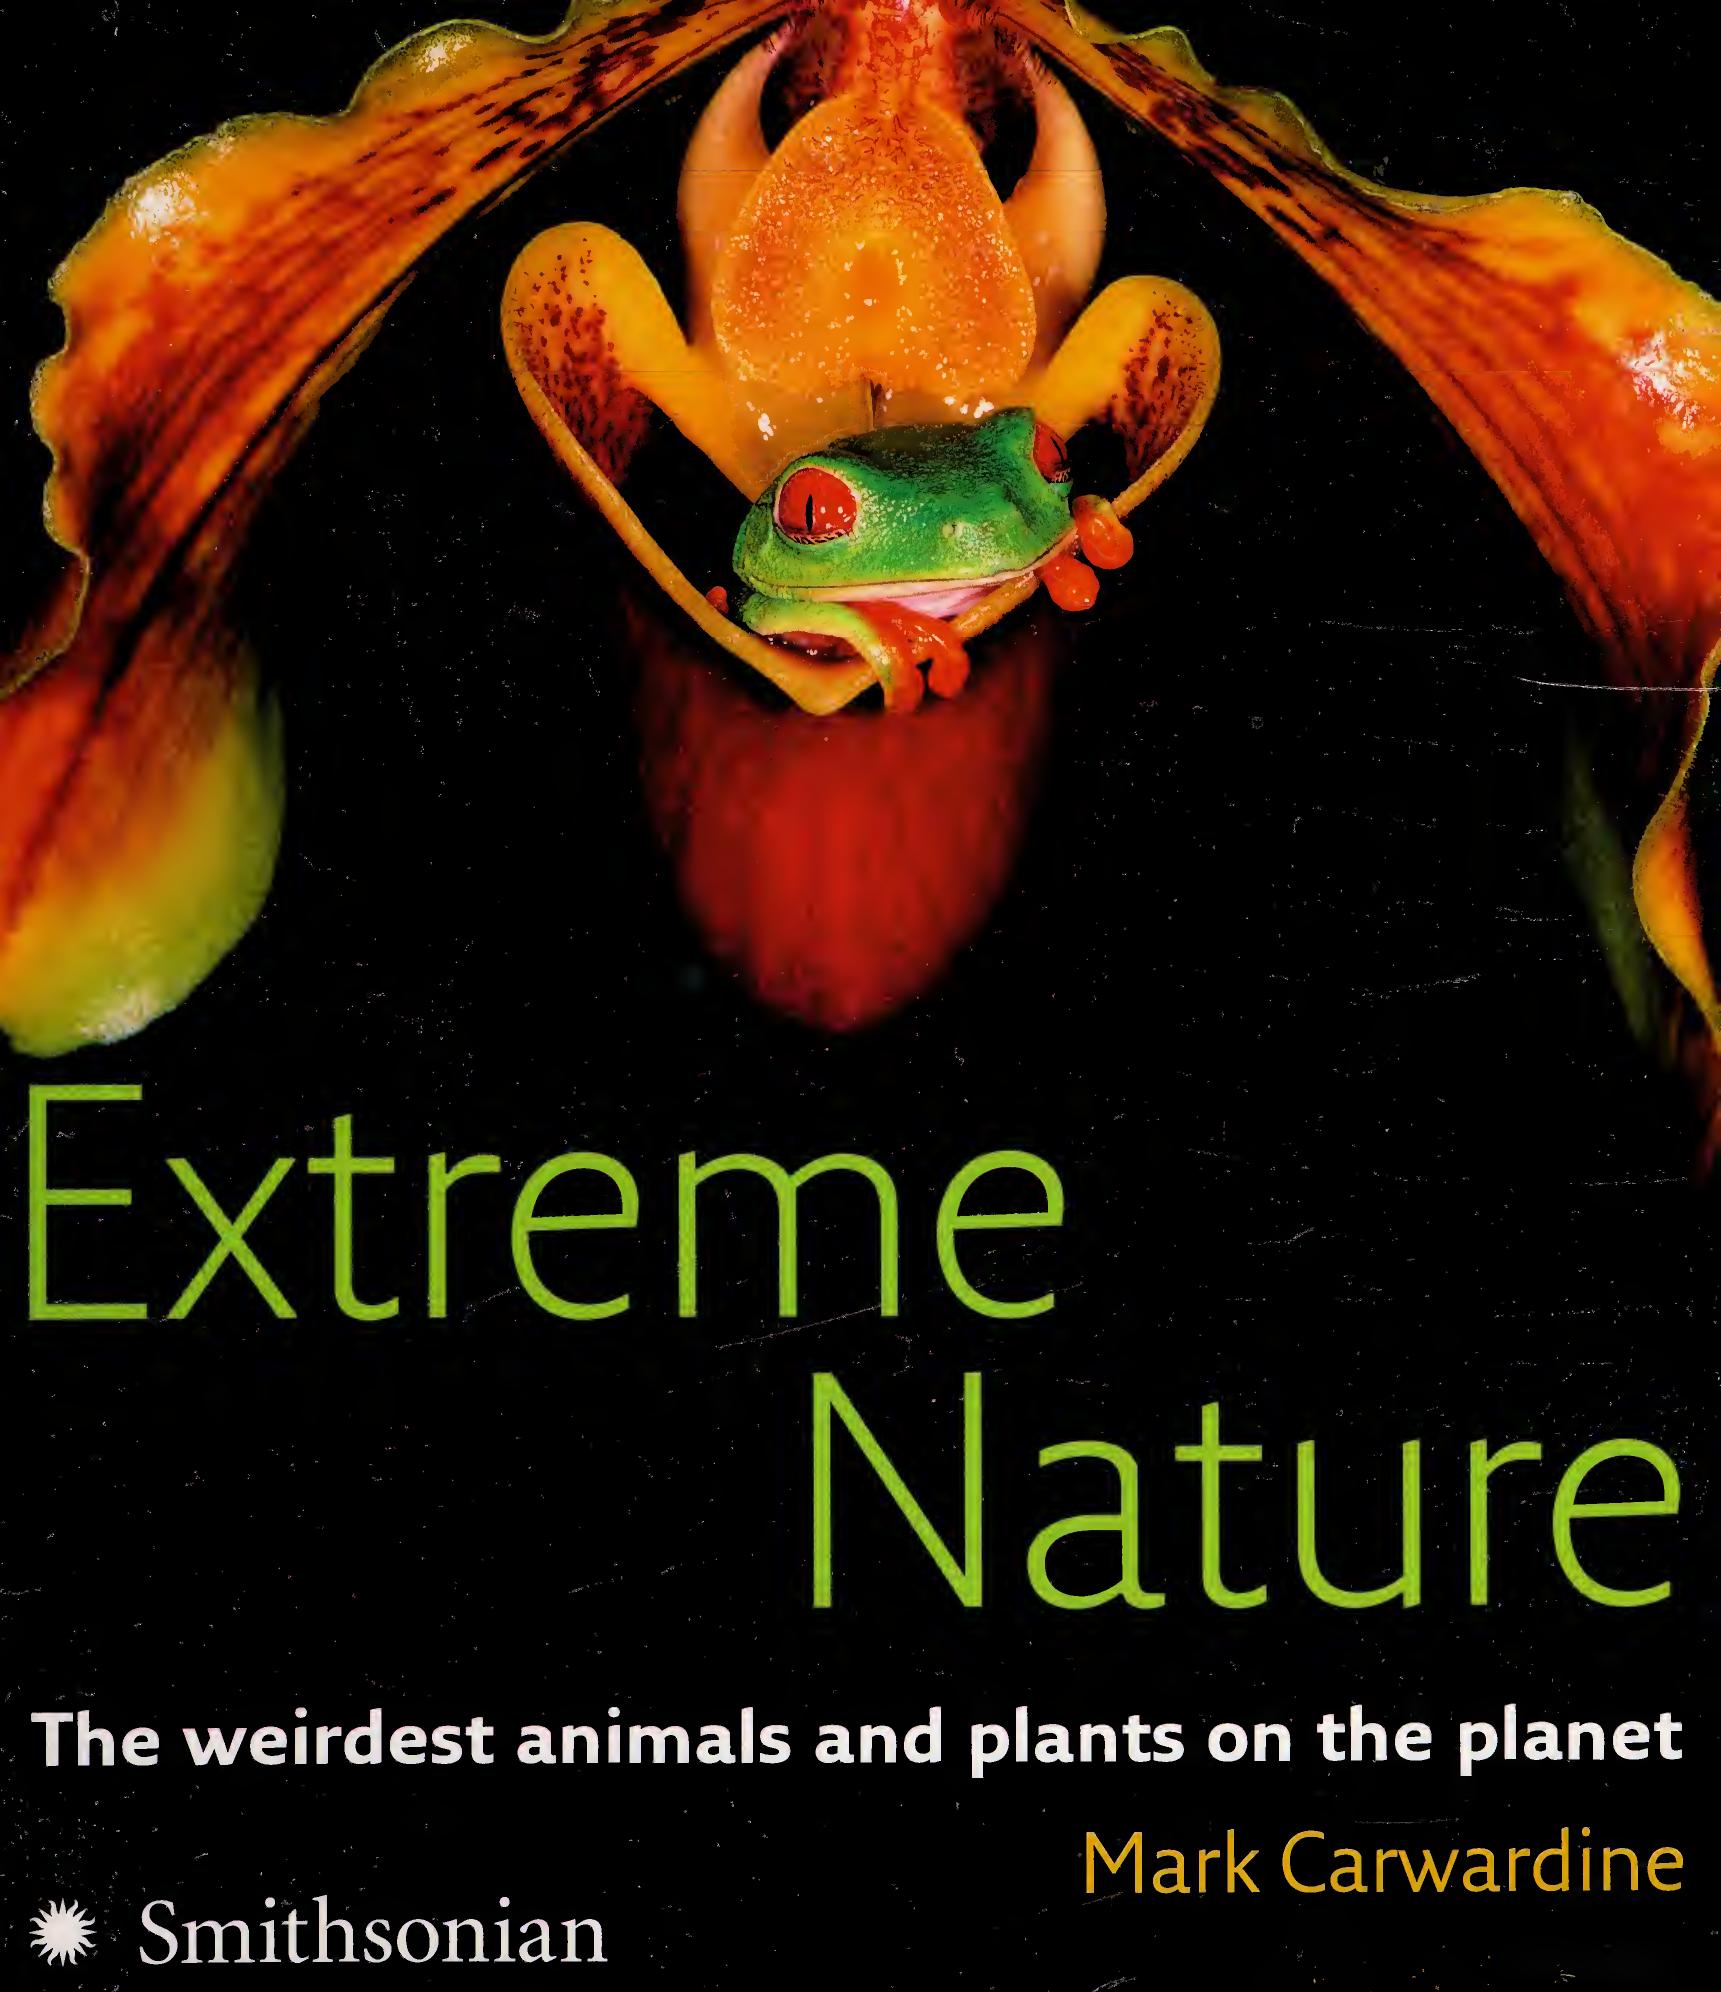 Extreme Nature by Mark Carwardine